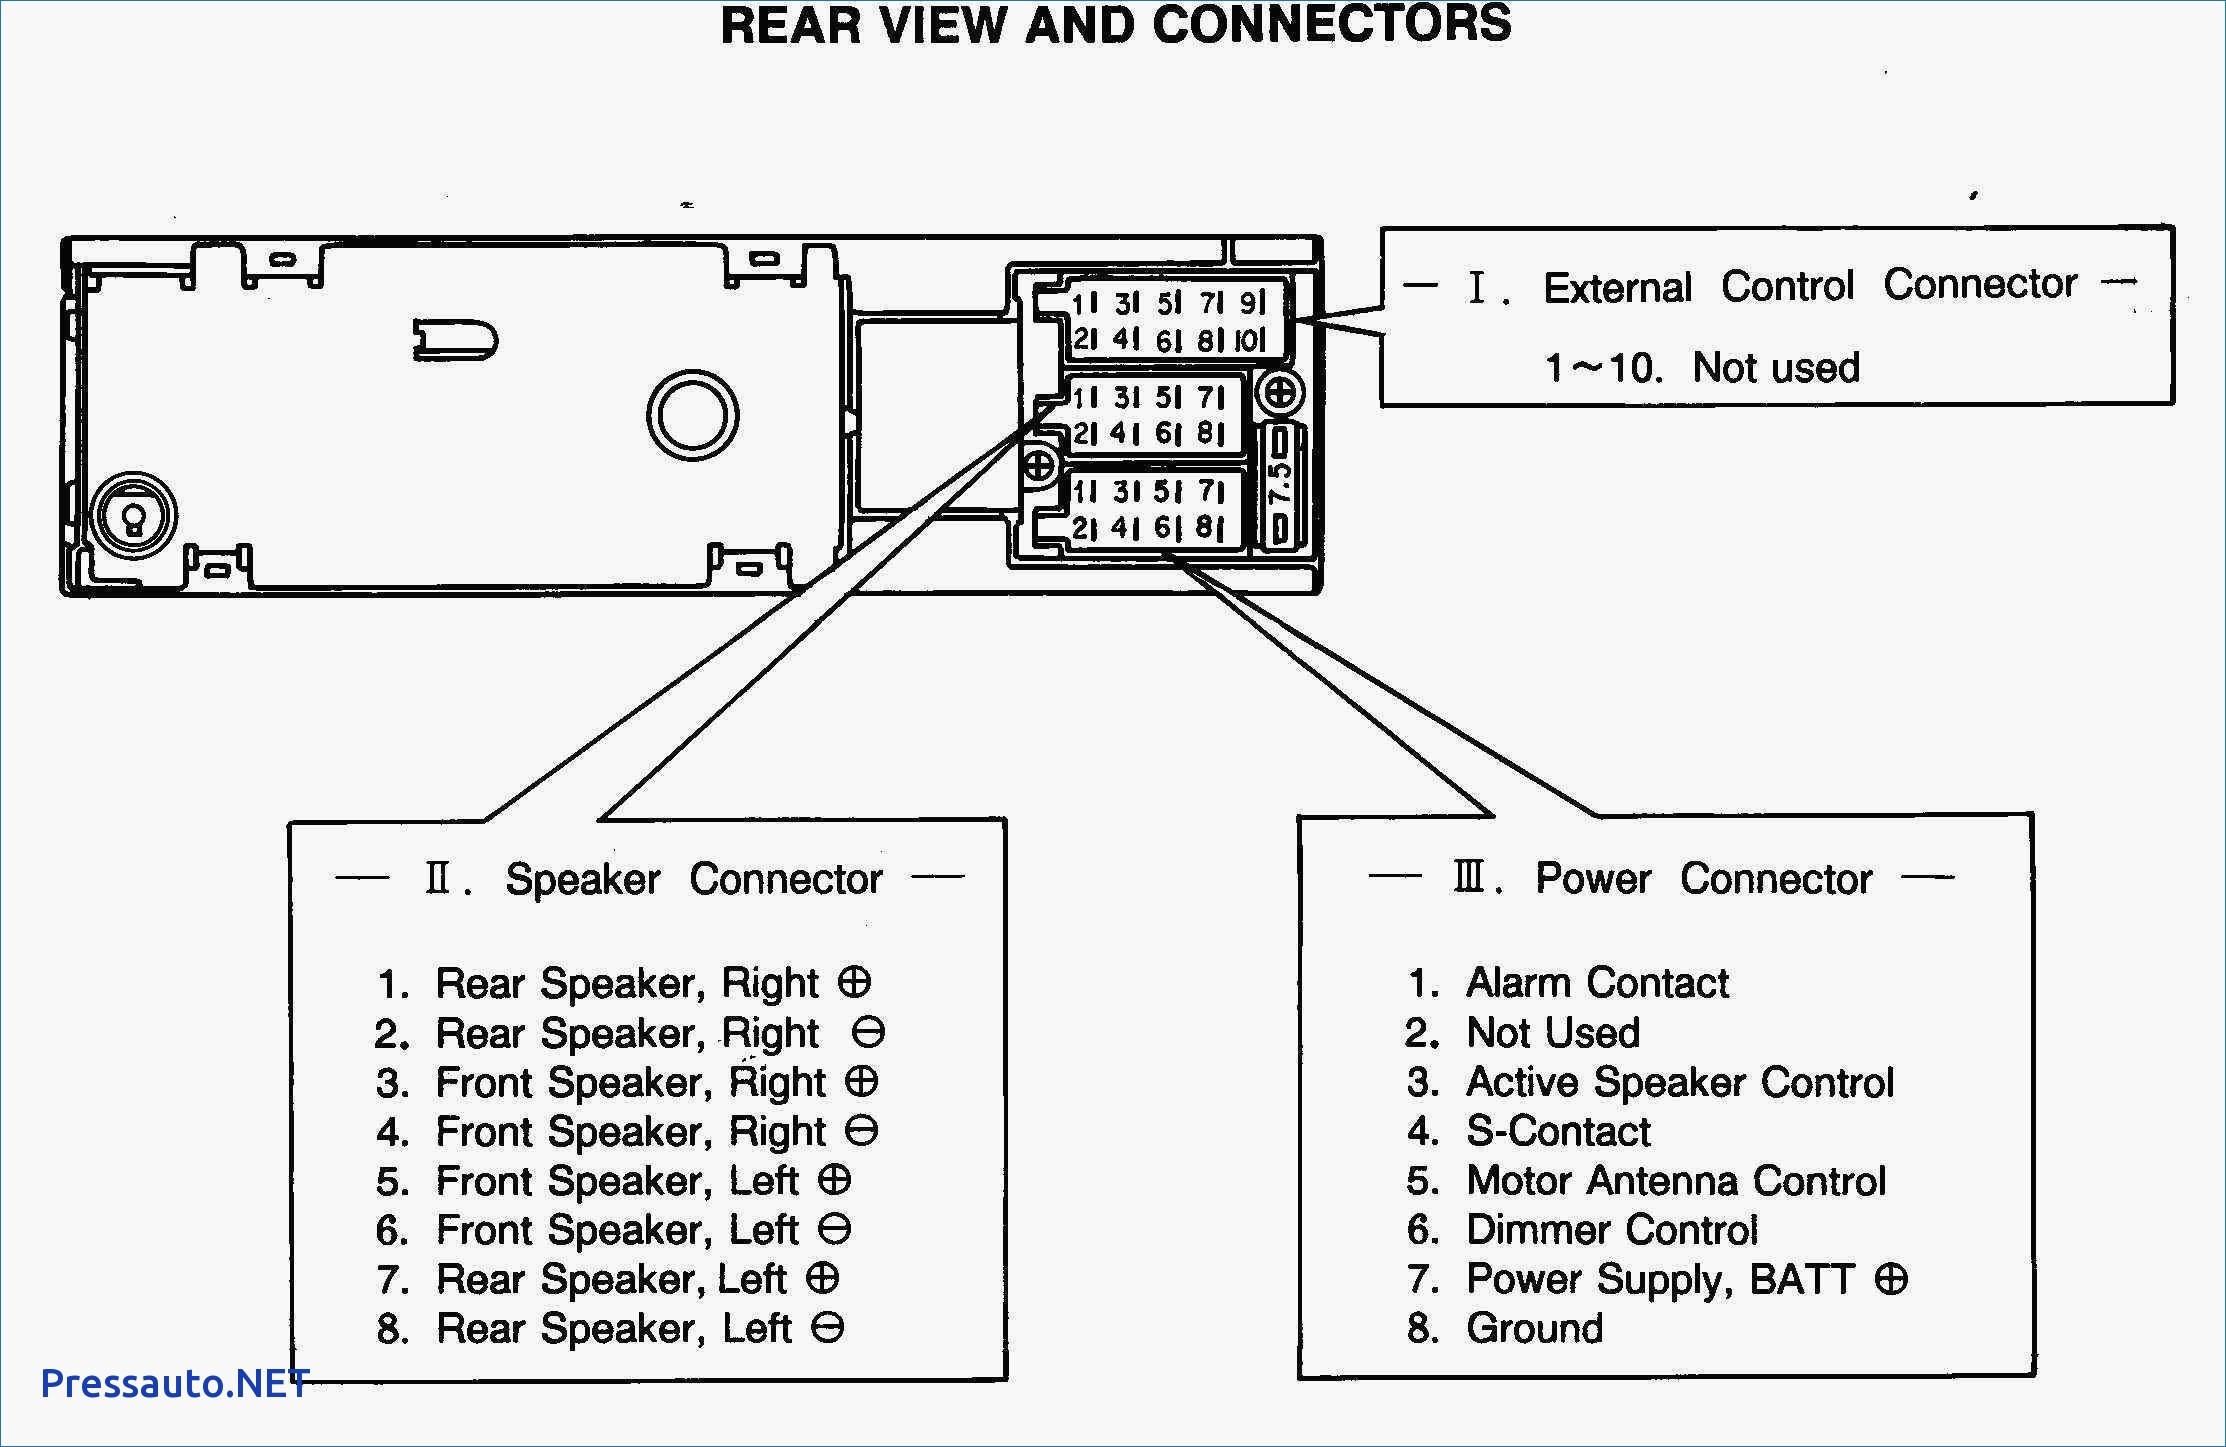 Car Stereo Speaker Wiring Diagram Fresh Speaker Wiring Diagram Series Vs Parallel Diagram Of Car Stereo Speaker Wiring Diagram